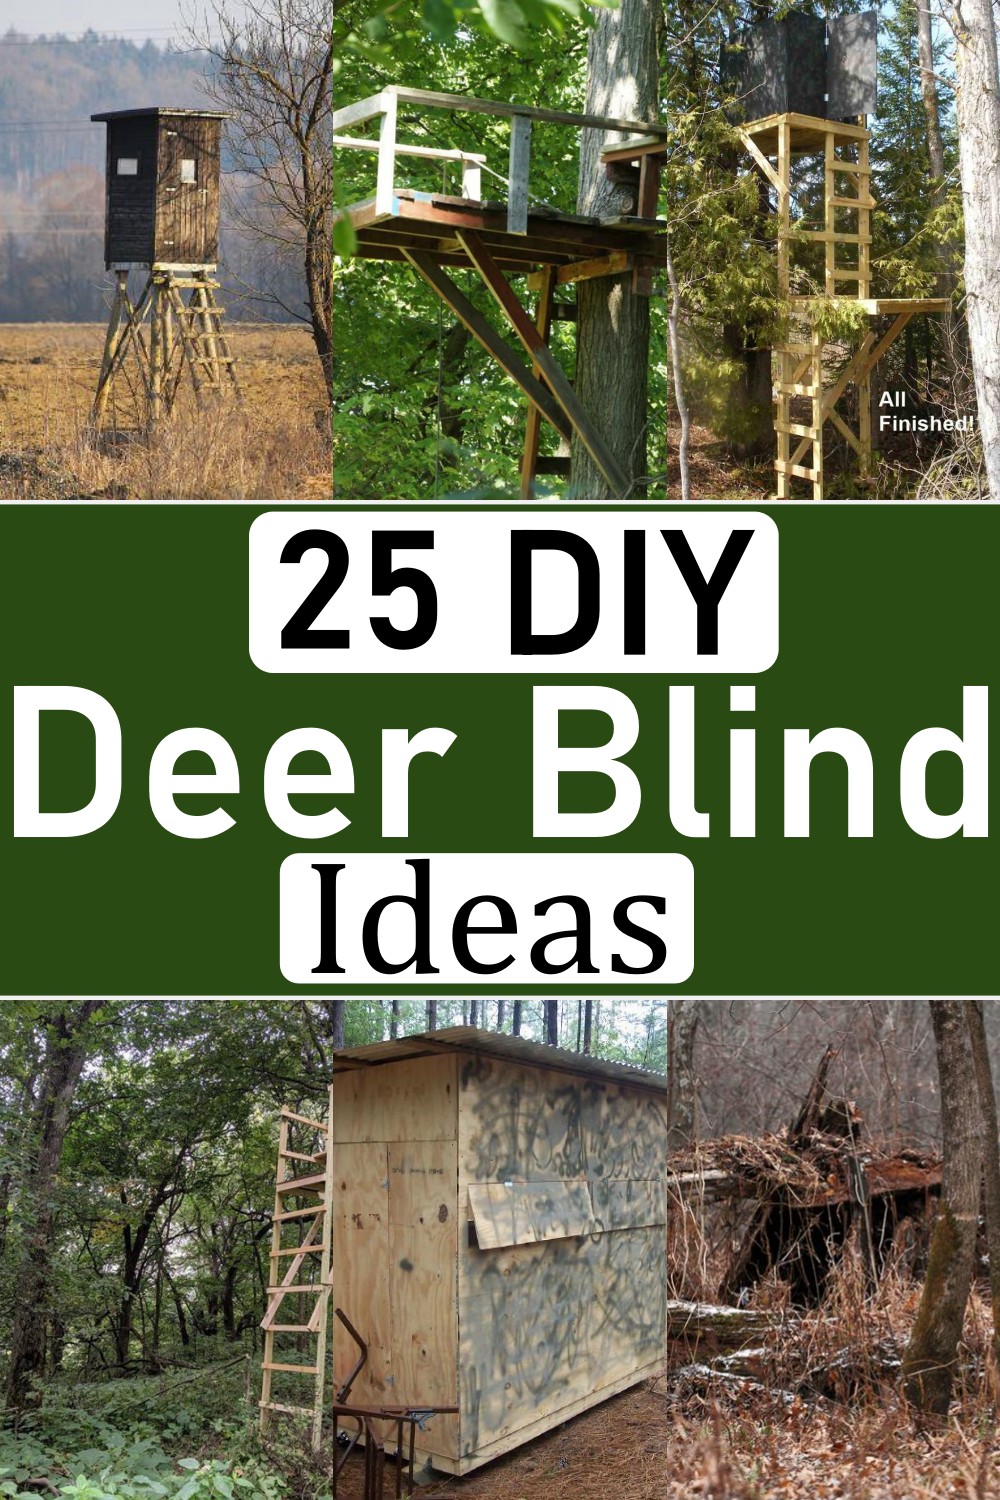 Deer Blind